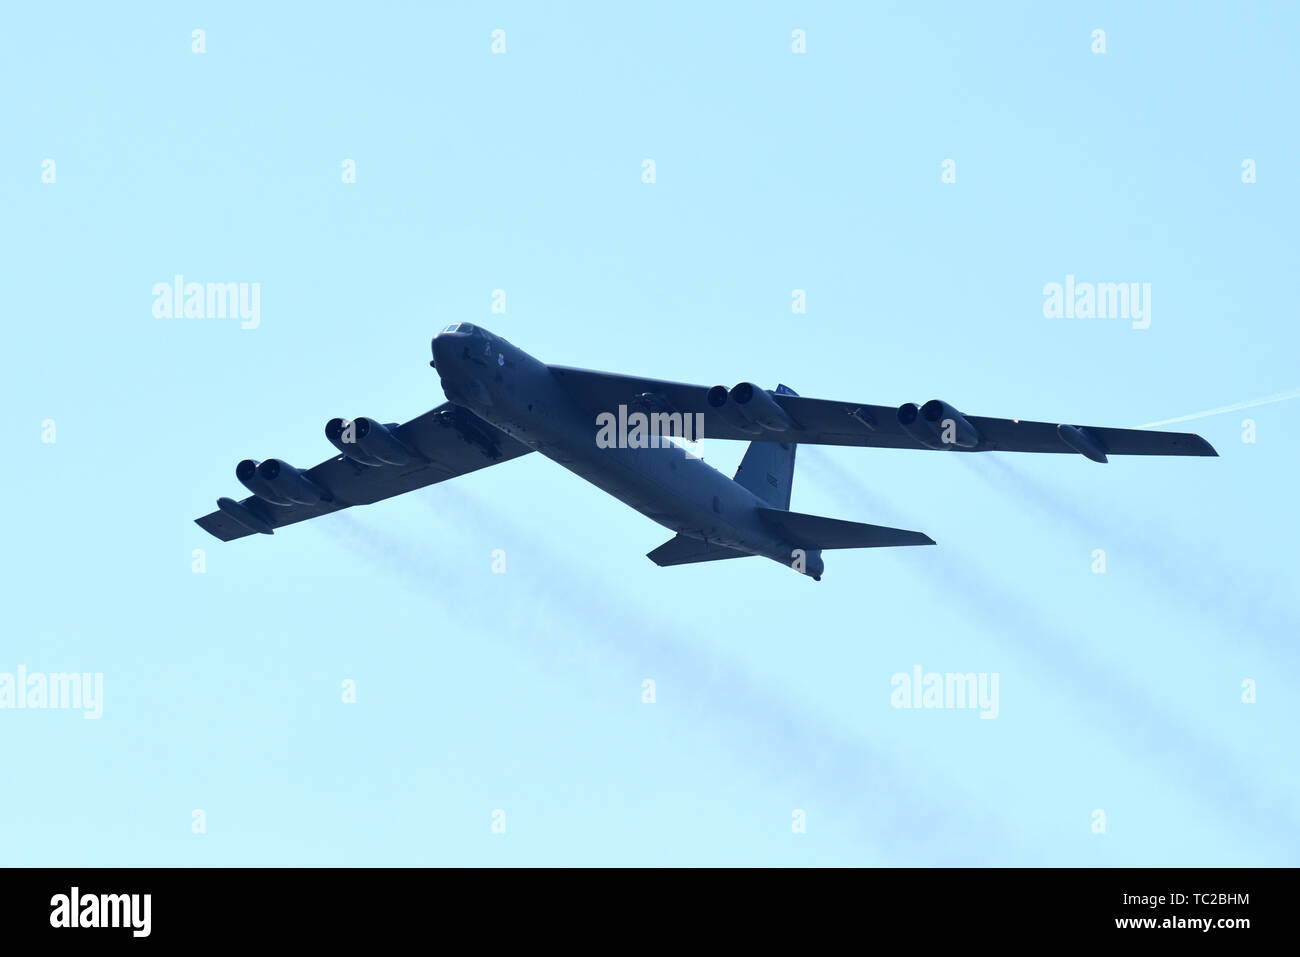 Un U.S. Air Force B-52 Stratofortress bombardier stratégique à partir de la 2e Escadre à la bombe au cours de l'exercice OTAN Astral Knight 19 Juin 4, 2019 sur la base aérienne d'Aviano, en Italie. Banque D'Images